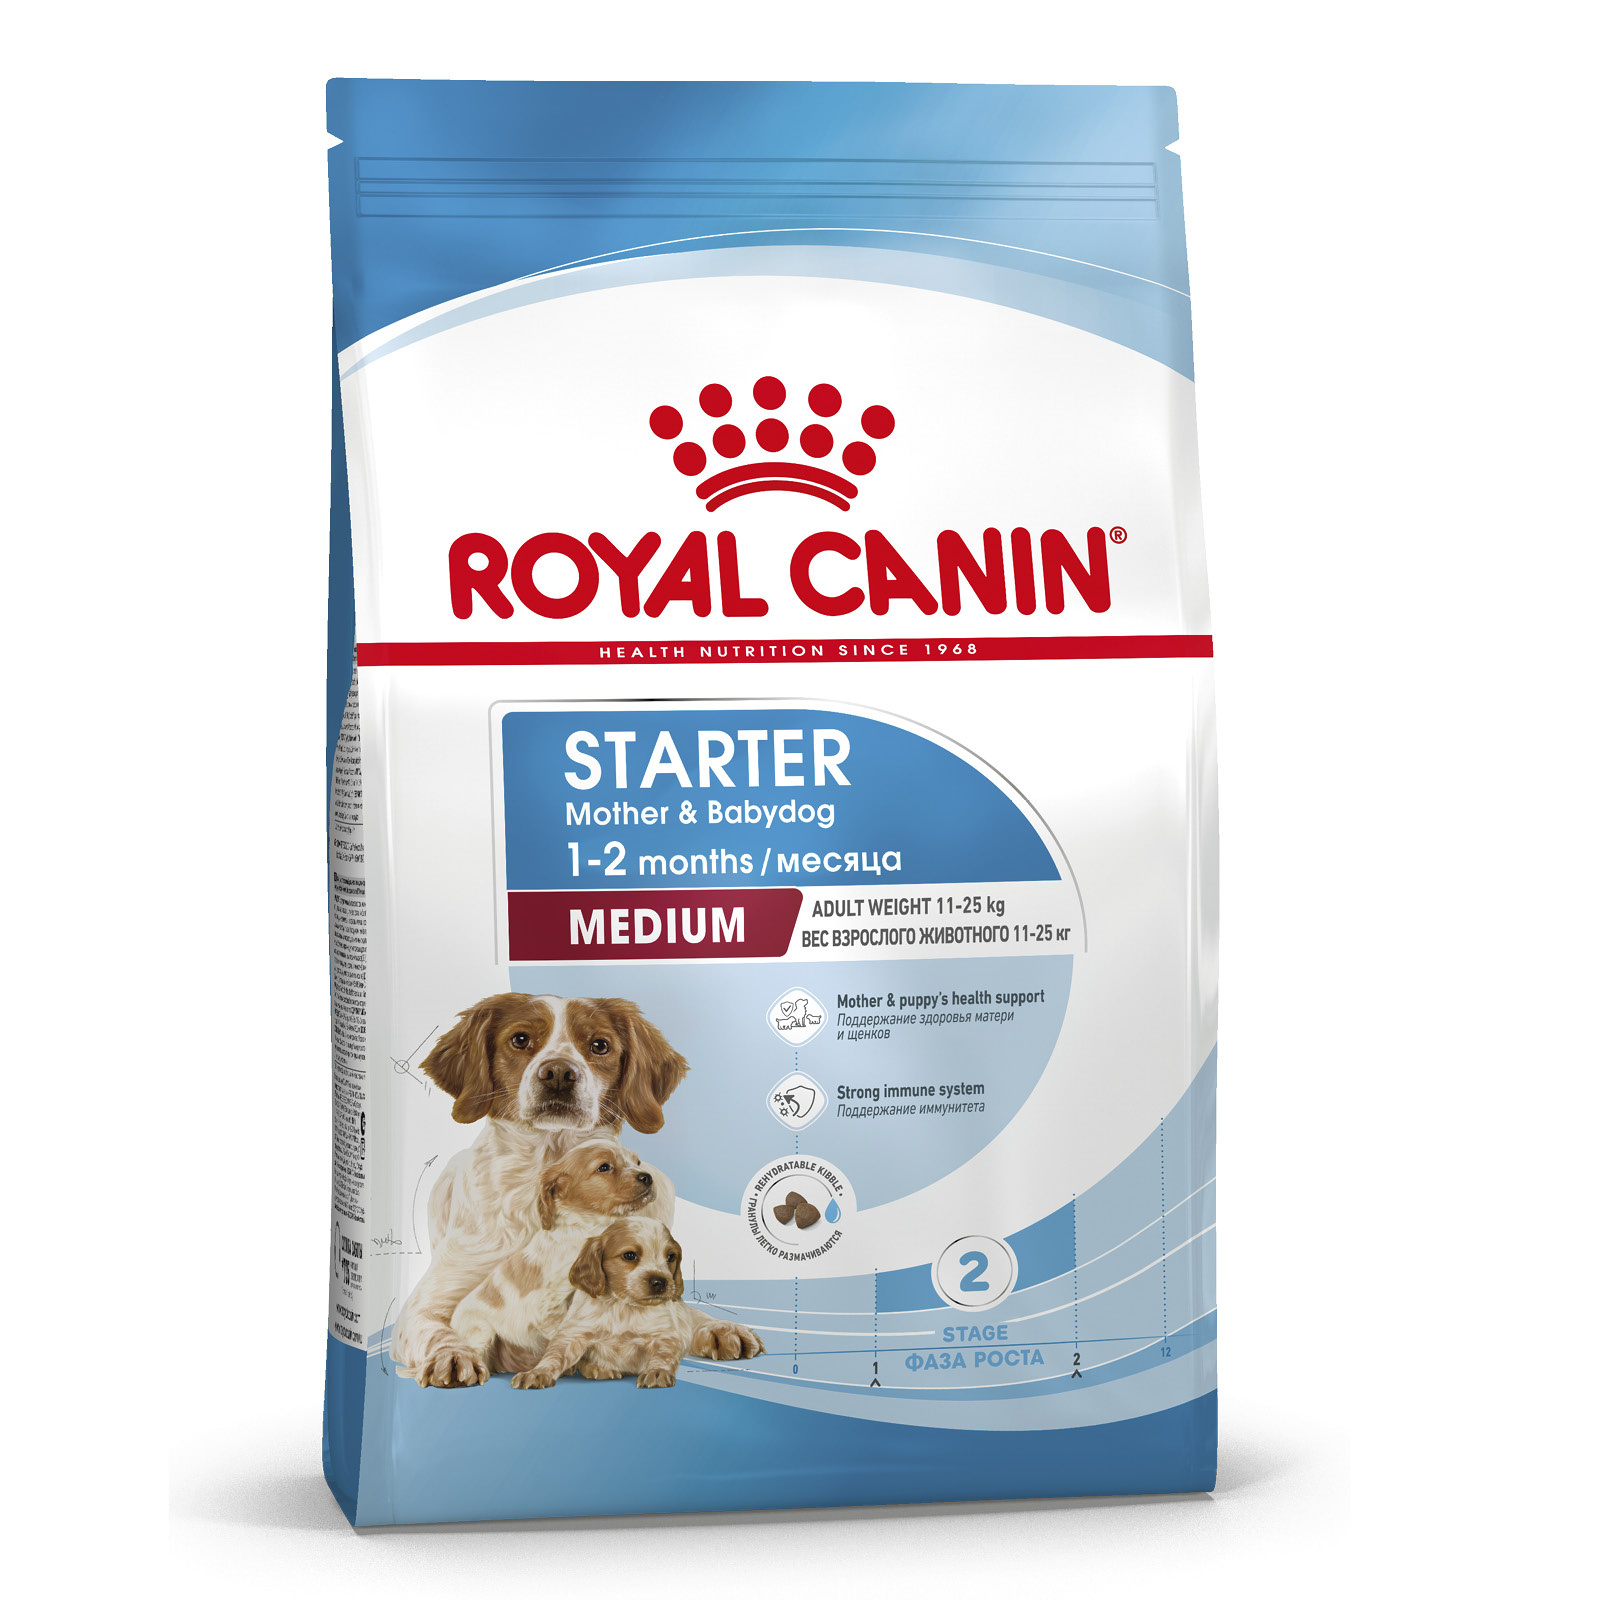 Royal Canin Корм Royal Canin для щенков средних пород от 3 недель до 2 месяцев, беременных и кормящих сук (4 кг) grandorf для юниоров от 4 месяцев беременных и кормящих сук с ягненком и индейкой 3 кг